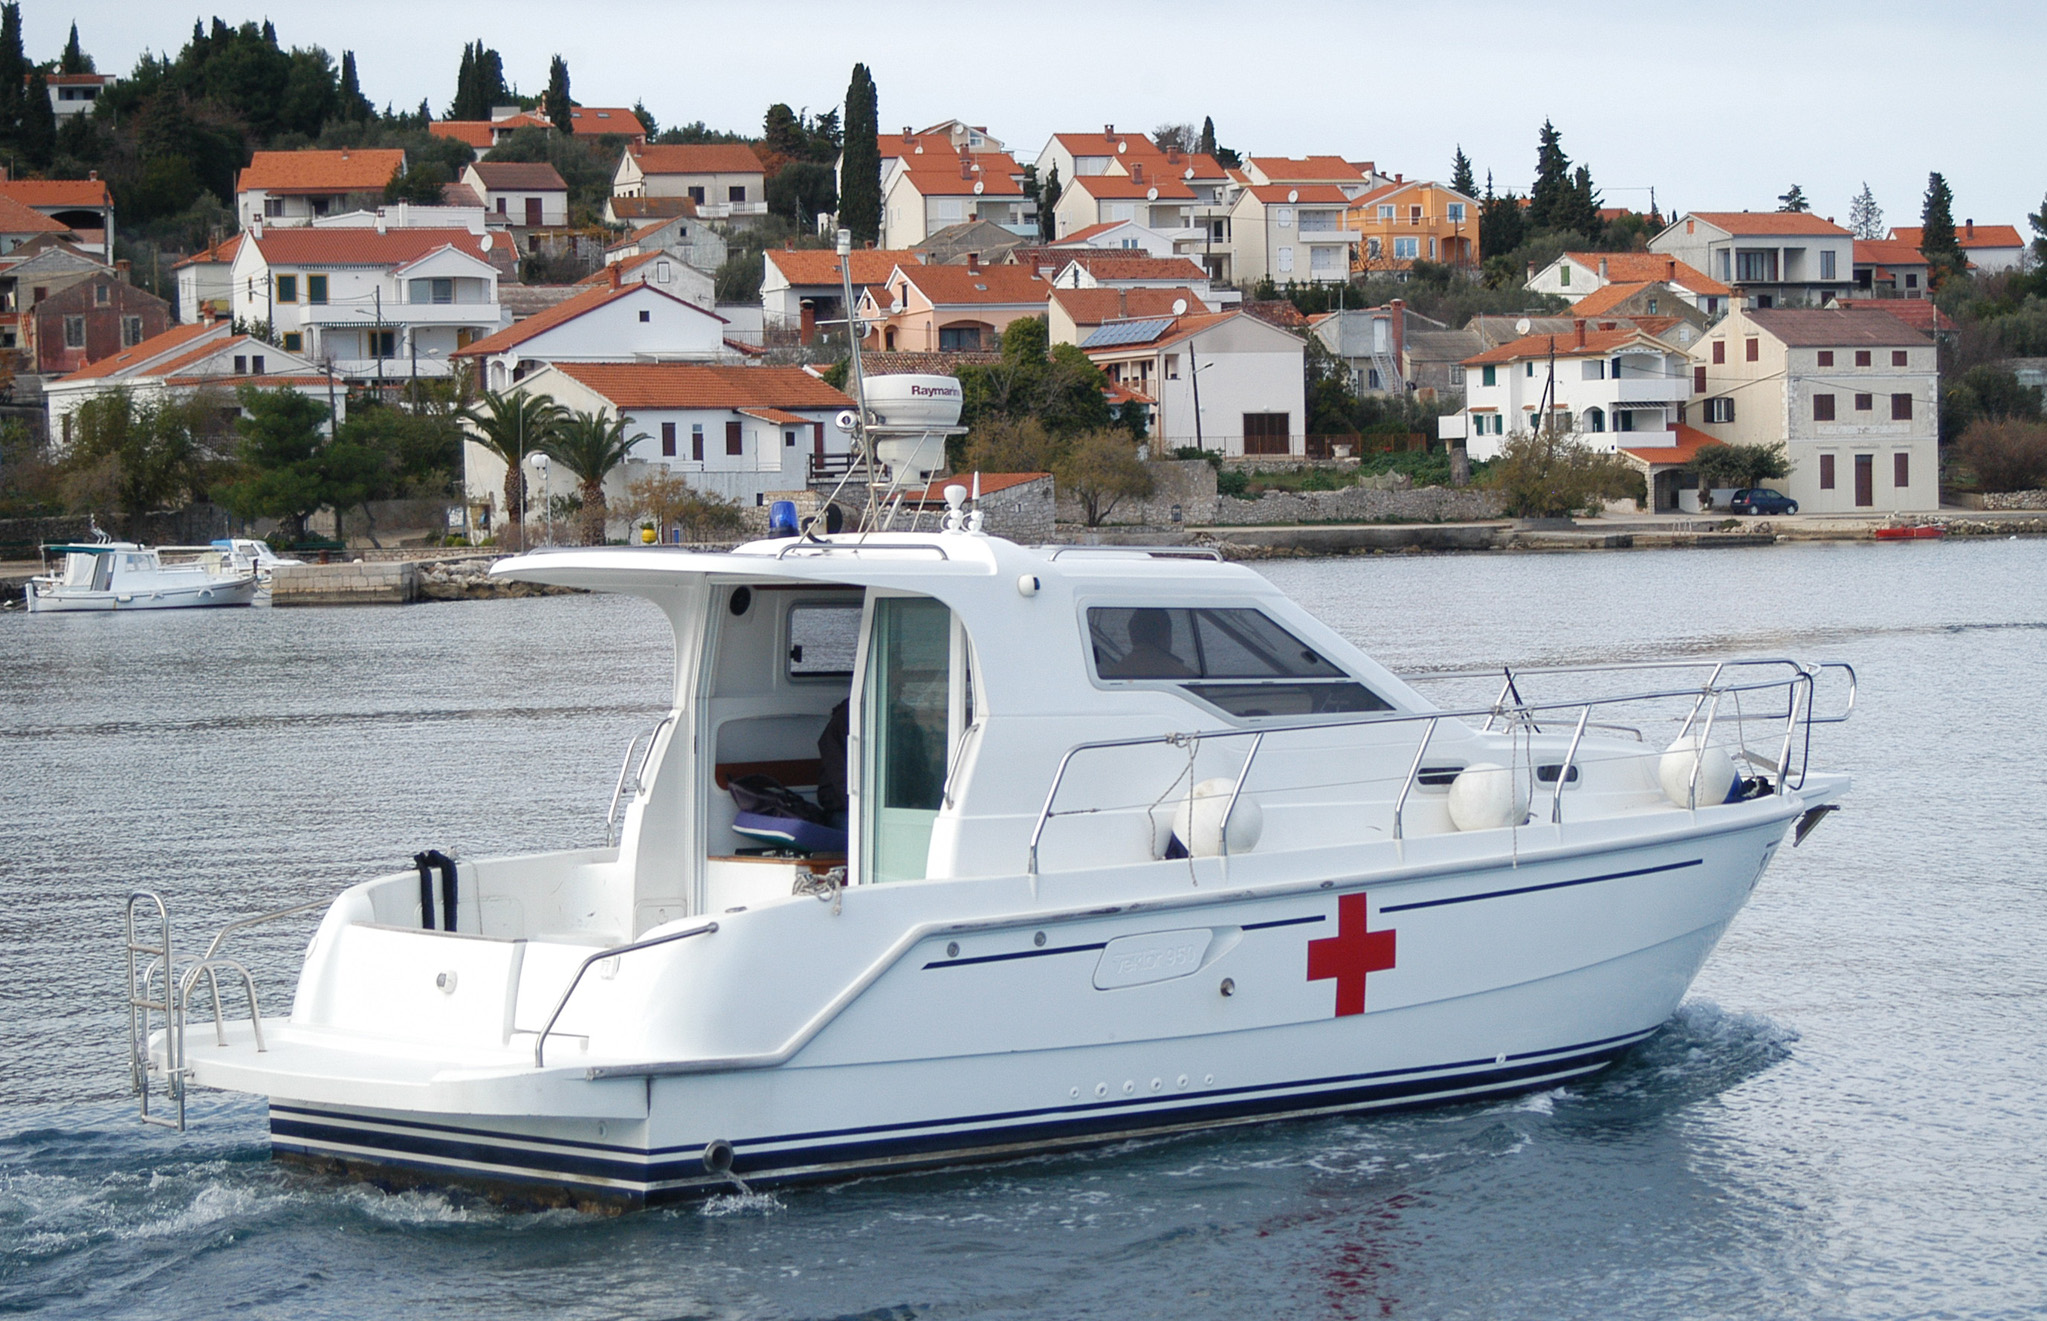 Ilustracija (ne prikazuje brodicu ni lokacije iz teksta) / Foto Zadarski list